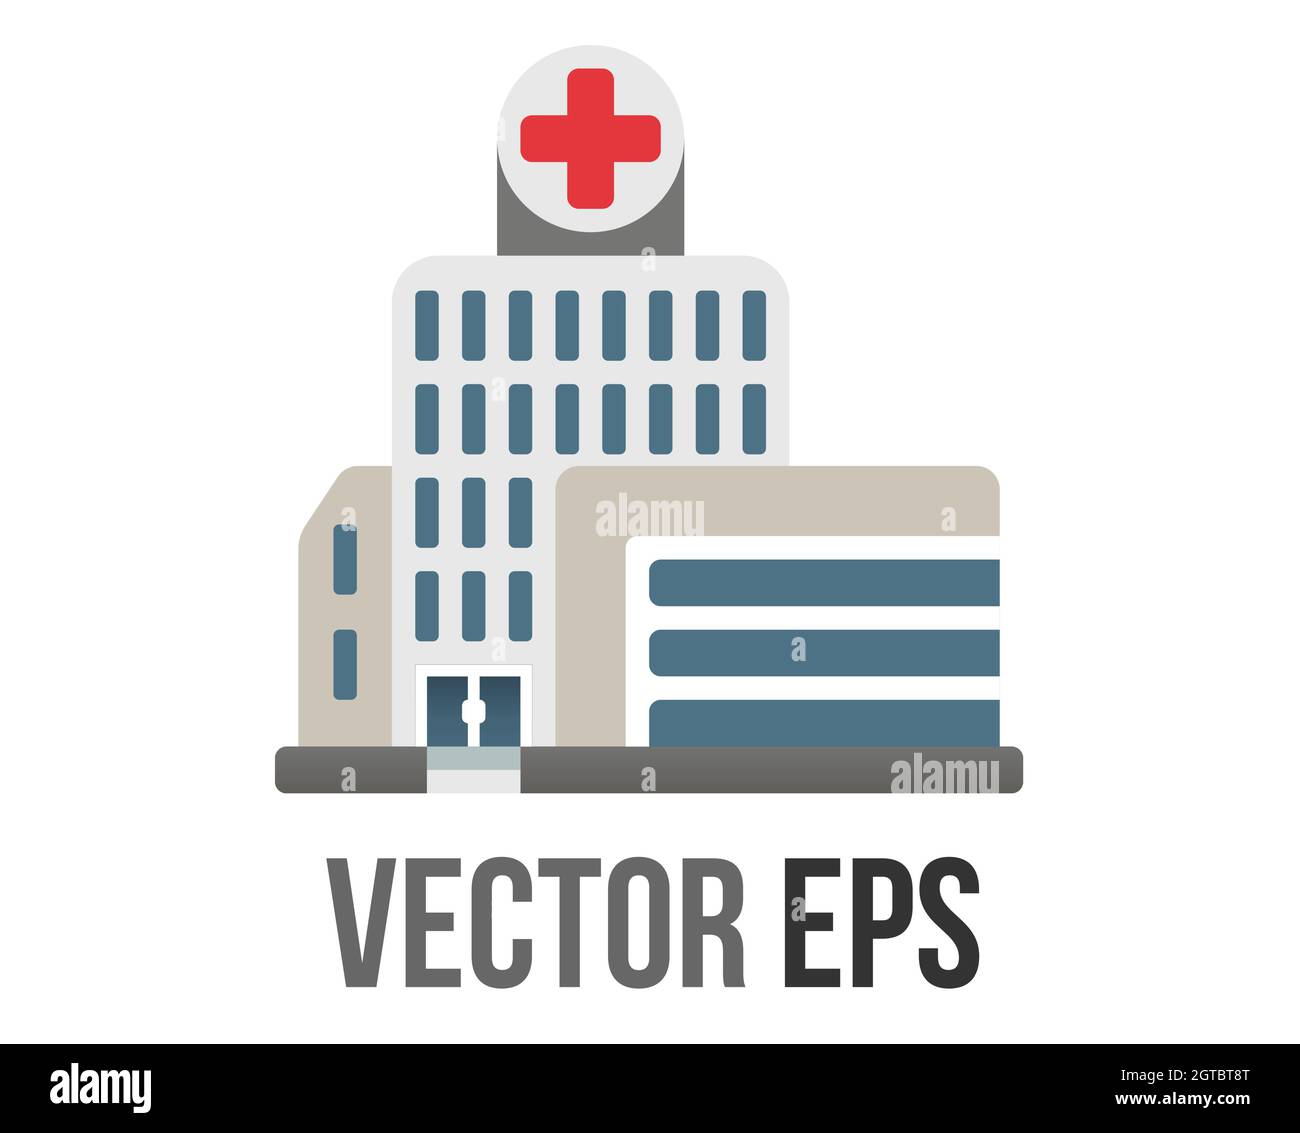 Das isolierte Vektor-Symbol für das Gesundheitszentrum, die Klinik oder das Krankenhaus mit einem großen roten Kreuz auf der Vorderseite Stock Vektor